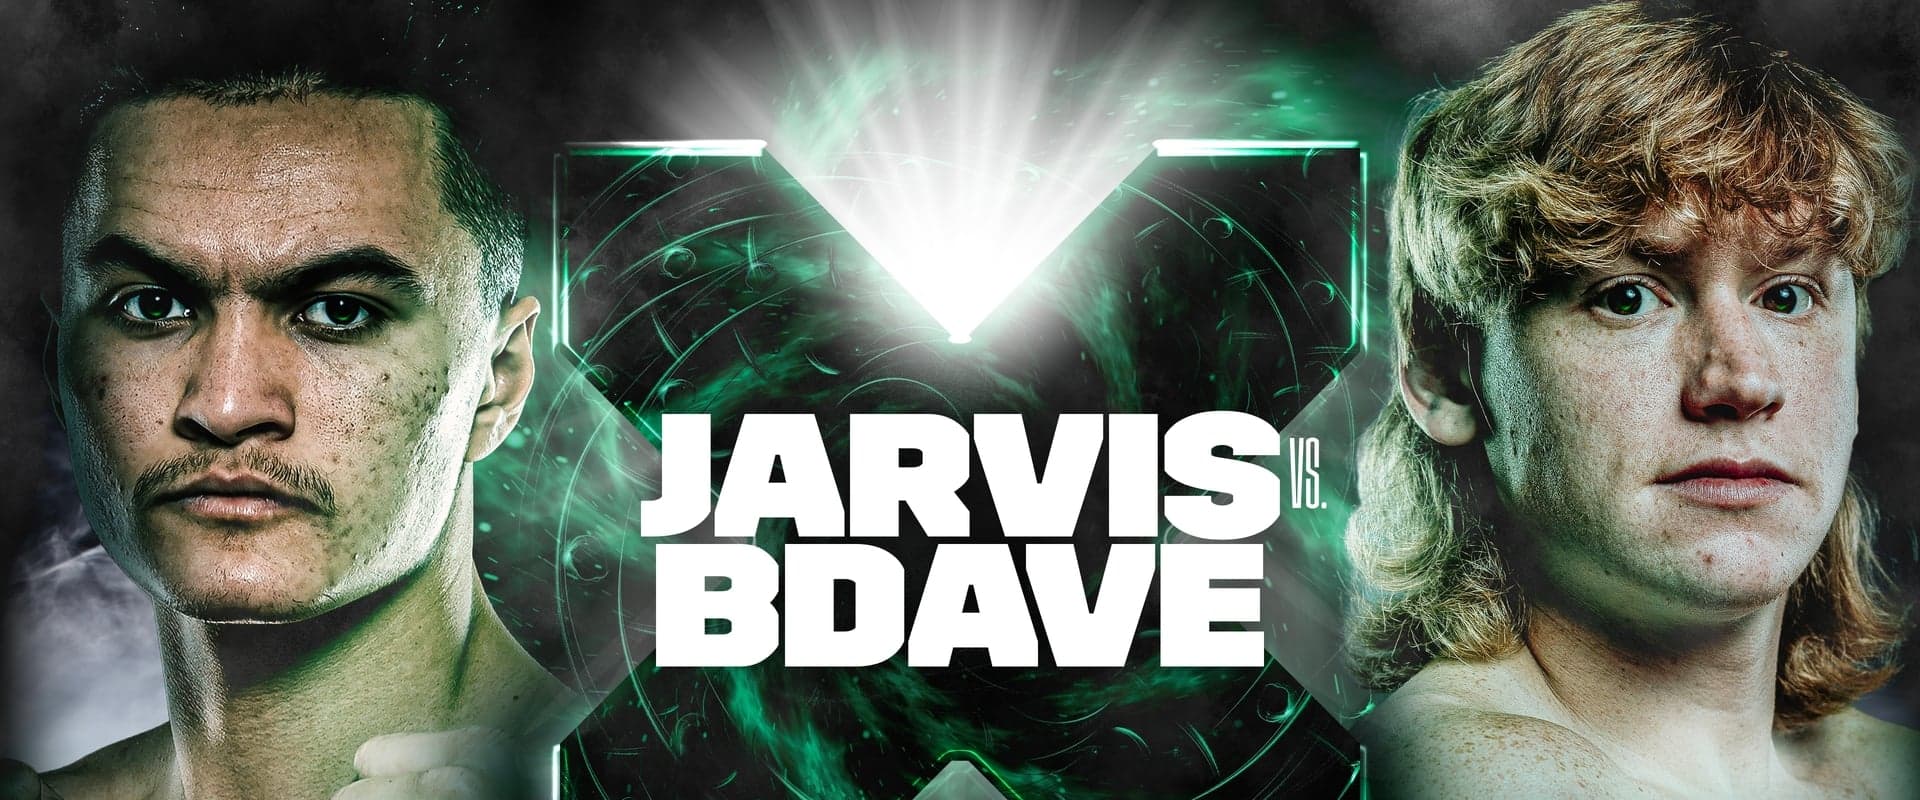 Jarvis vs. BDave